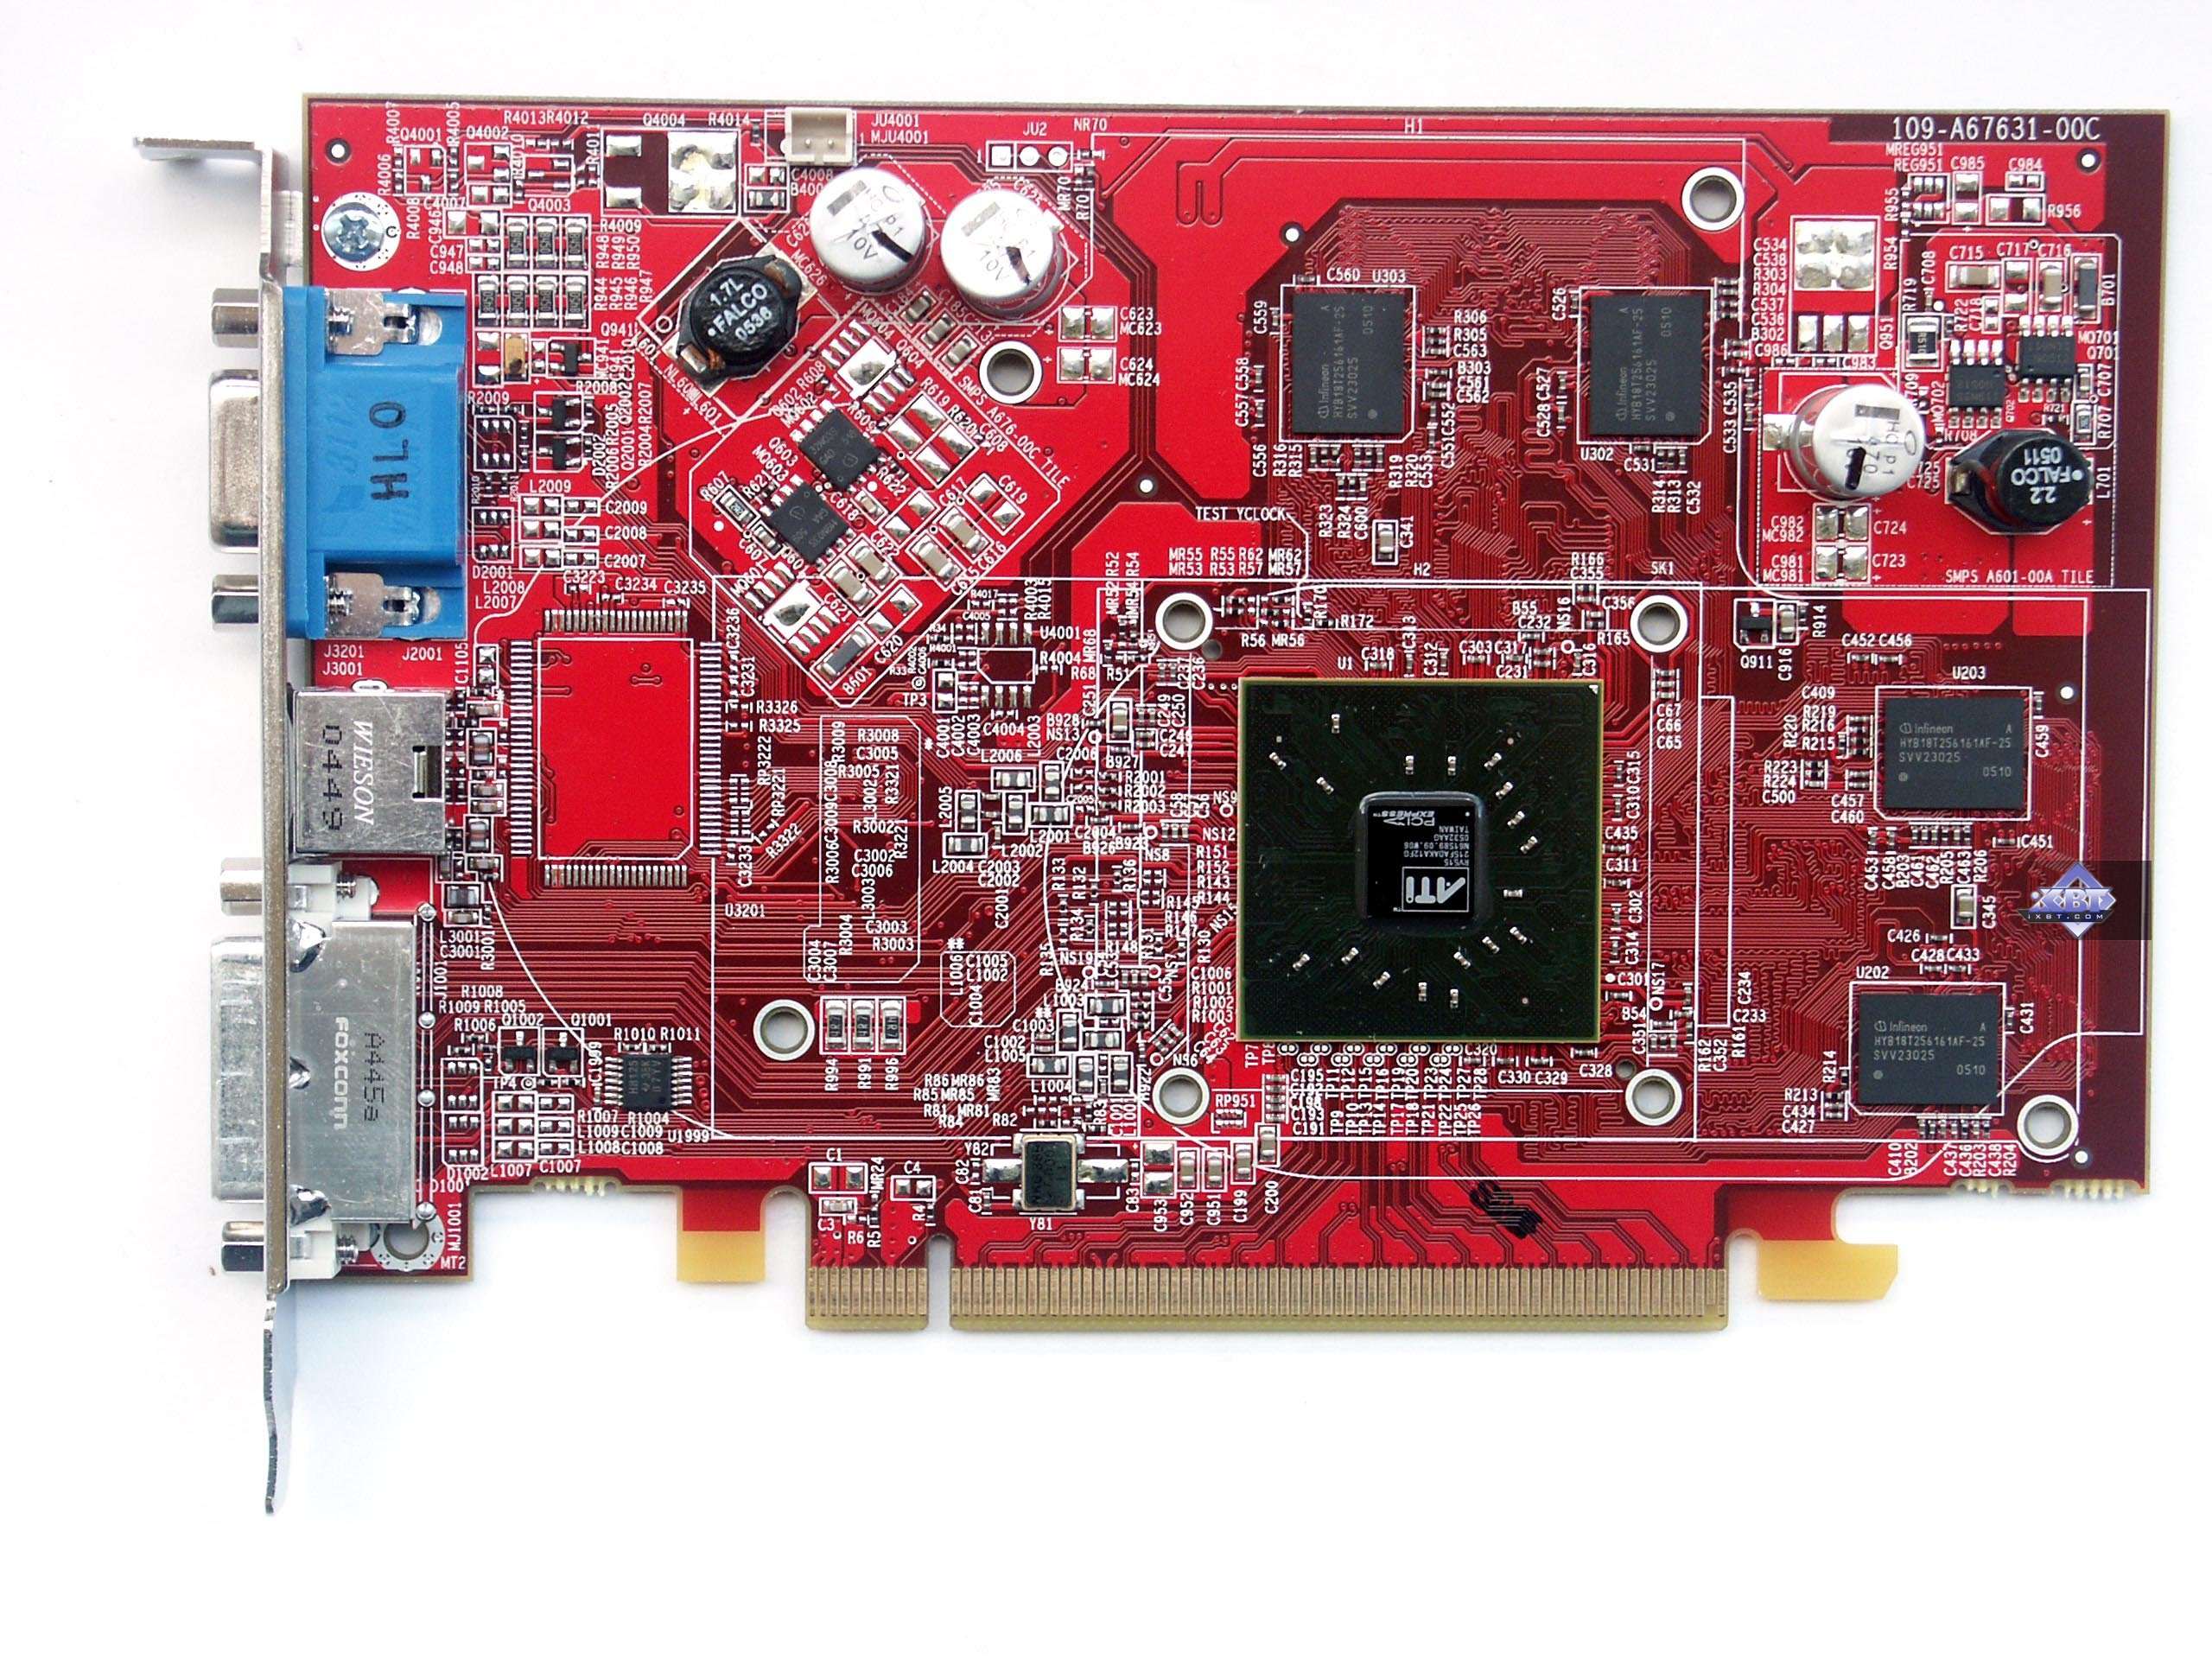 Ati radeon ноутбук. Видеокарта Radeon x1300 Pro. Видеокарта ATI Radeon 1300. ATI Radeon x1300/x1550 Series. Rx1300-td256e.